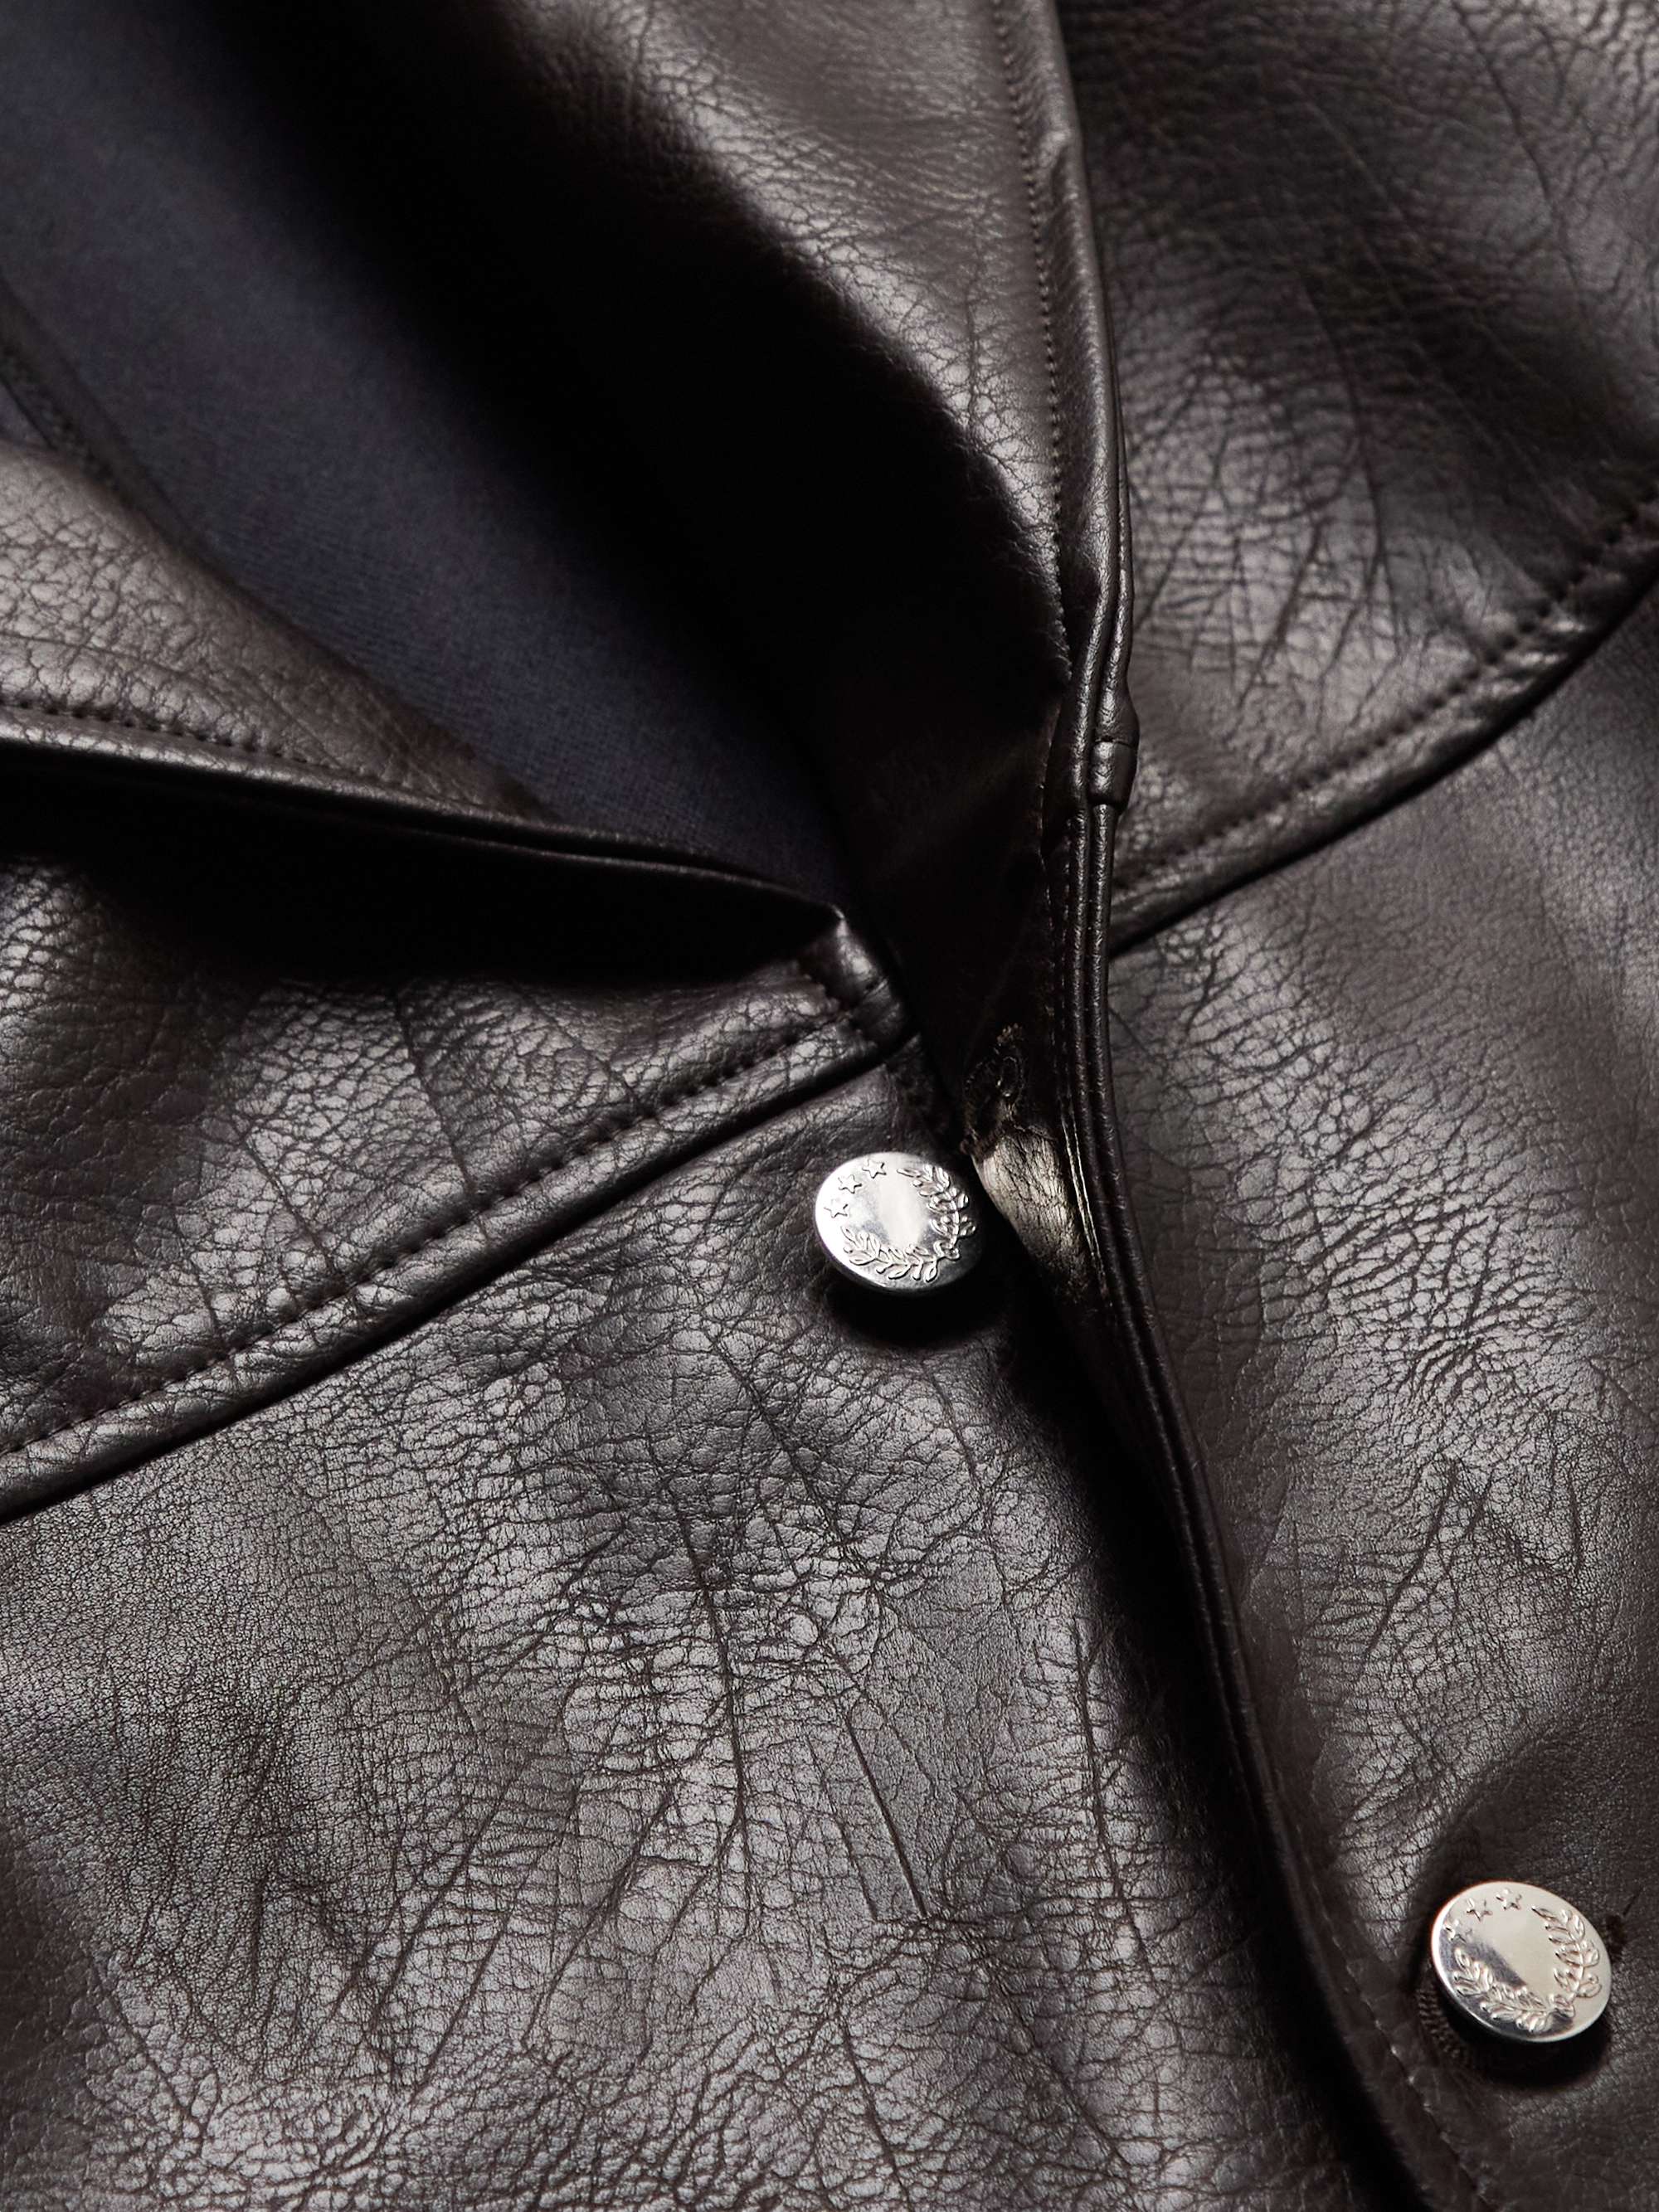 SÉFR Francis Vegan Leather Jacket